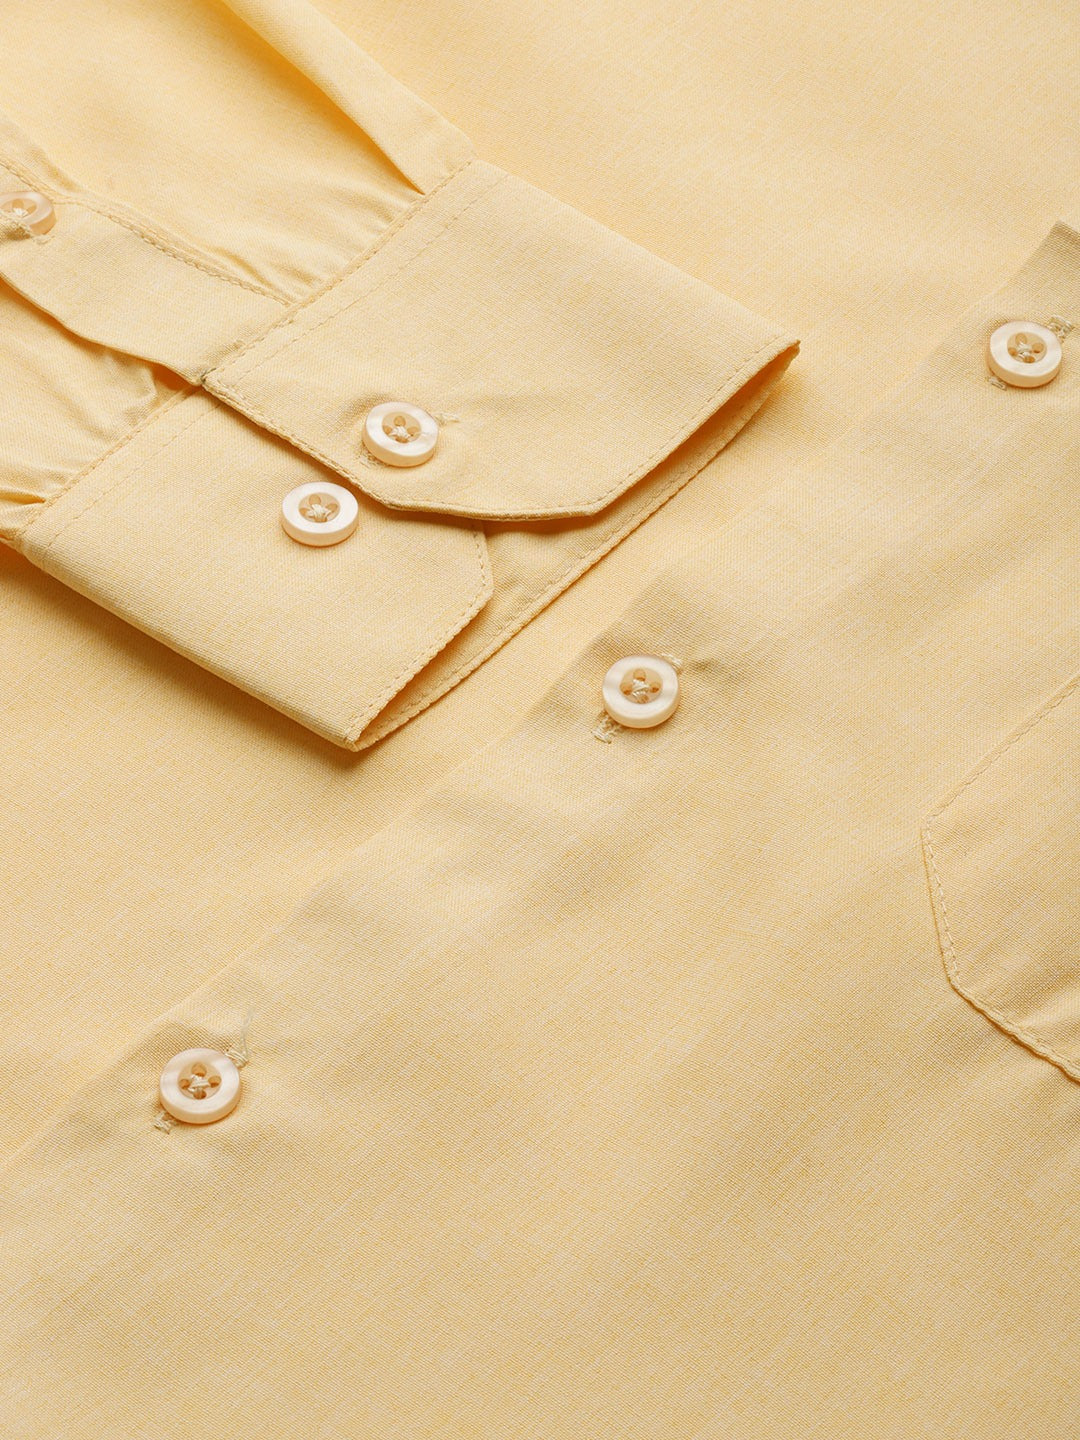 Men's Cotton Yellow Casual Shirt